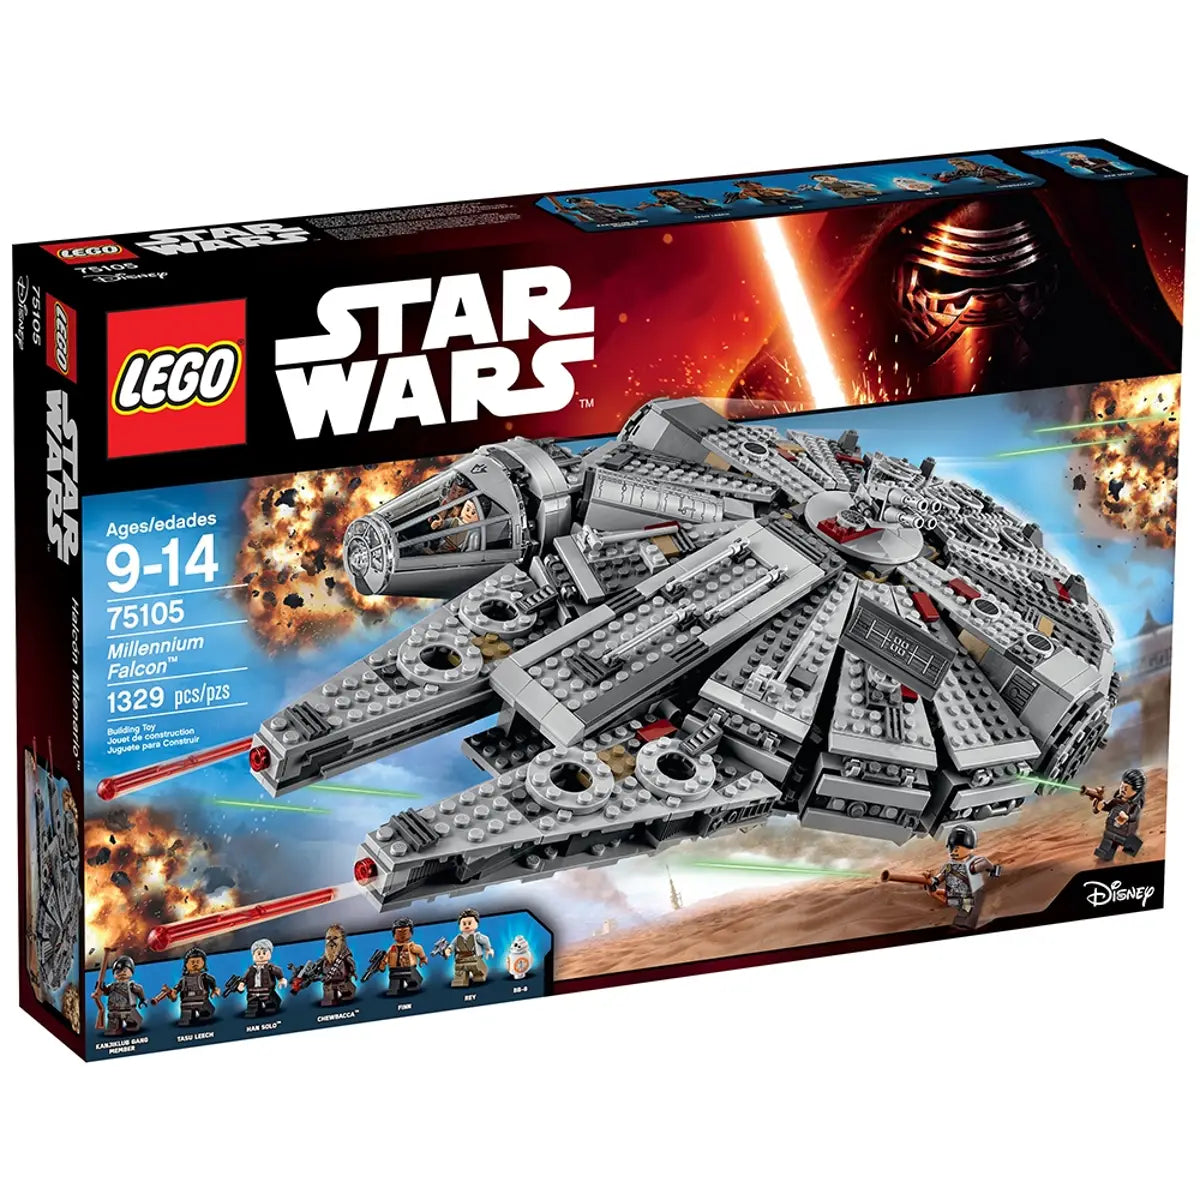 LEGO Star Wars - Millennium Falcon™ - 75105